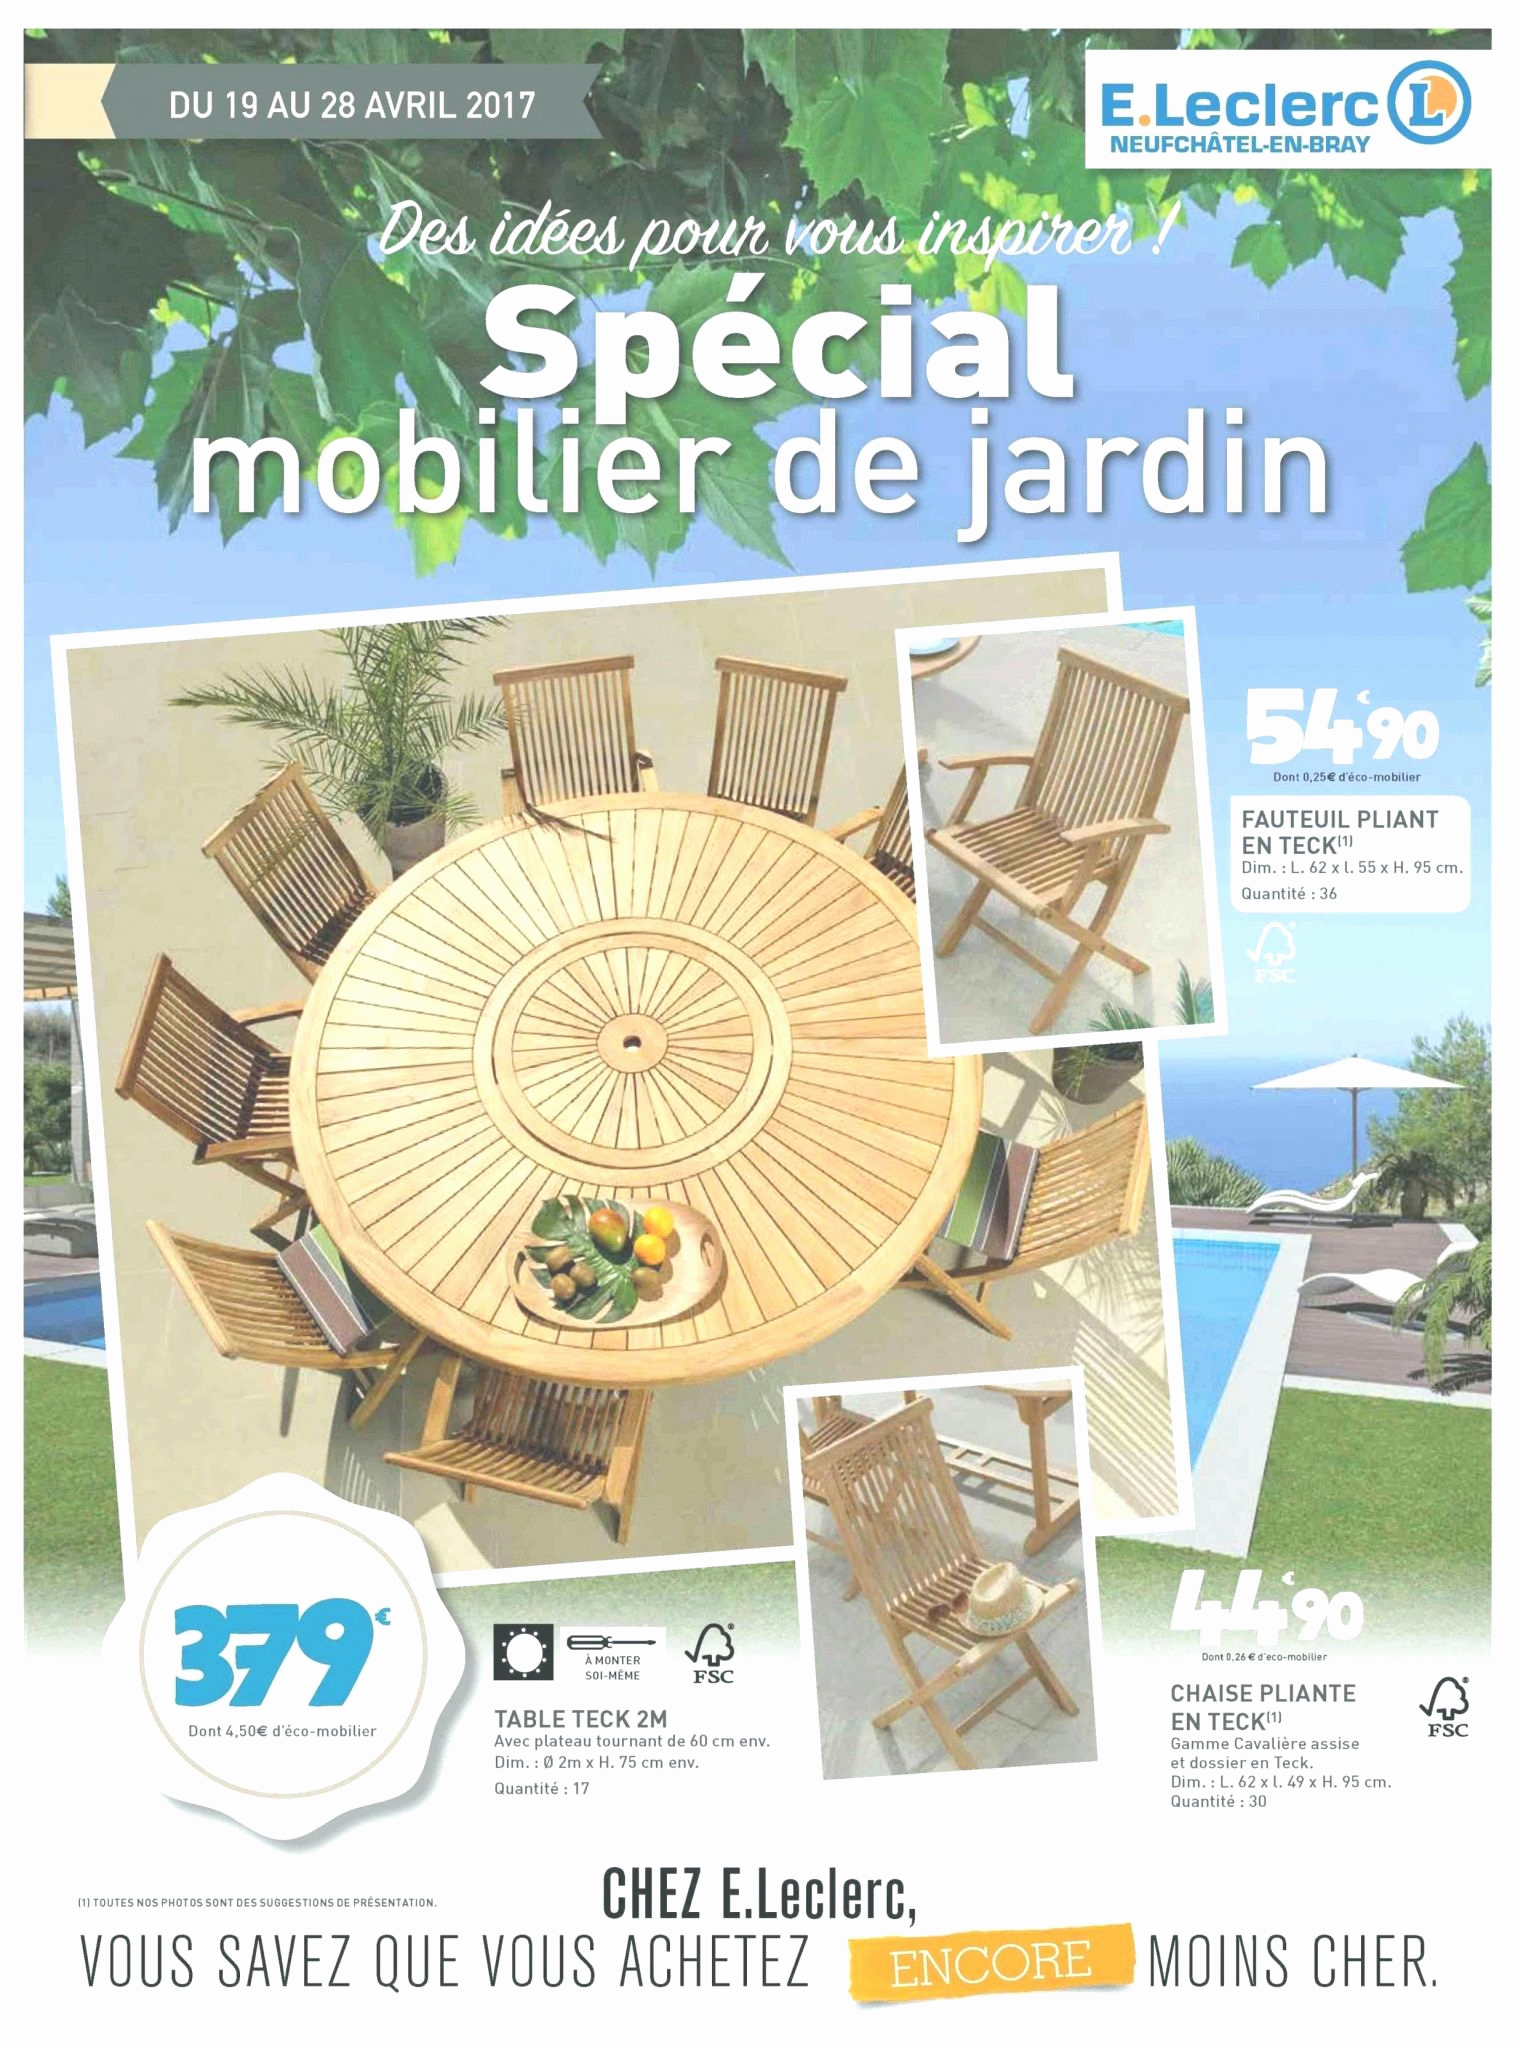 Salon De Jardin 4 Personnes Pas Cher Luxe Salon De Jardin Leclerc Catalogue 2017 Le Meilleur De Table